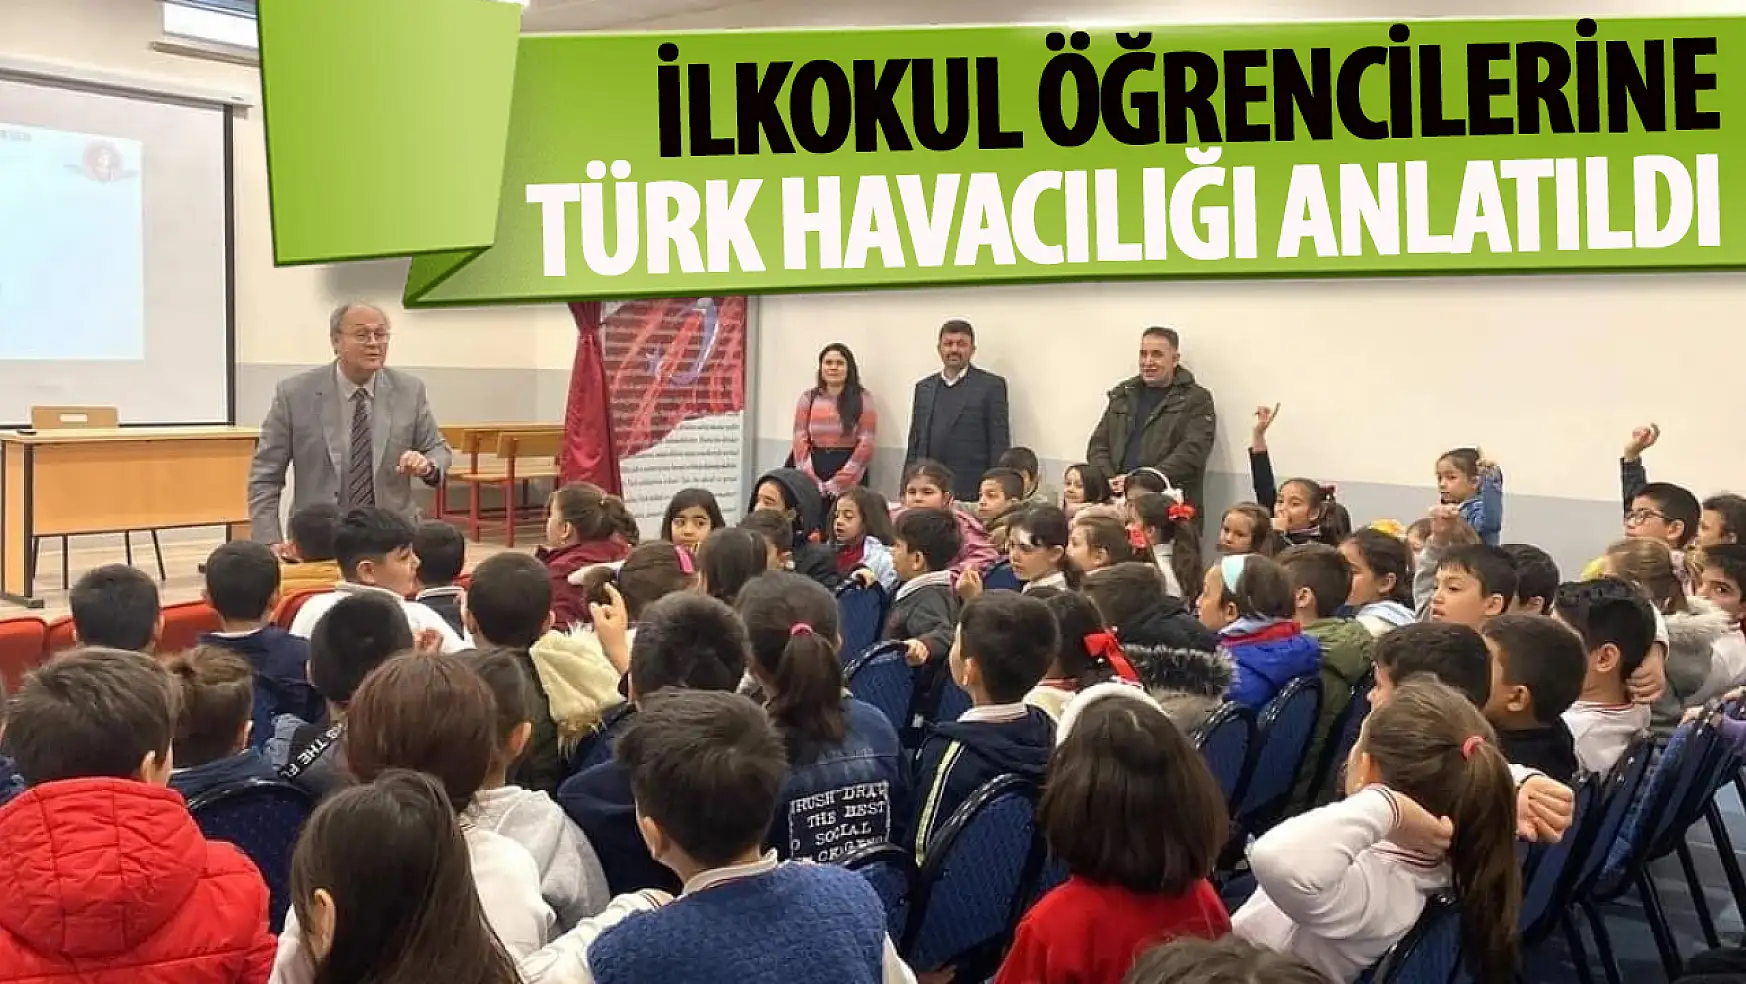 Konya'daki öğrencilere Türk havacılığı anlatıldı